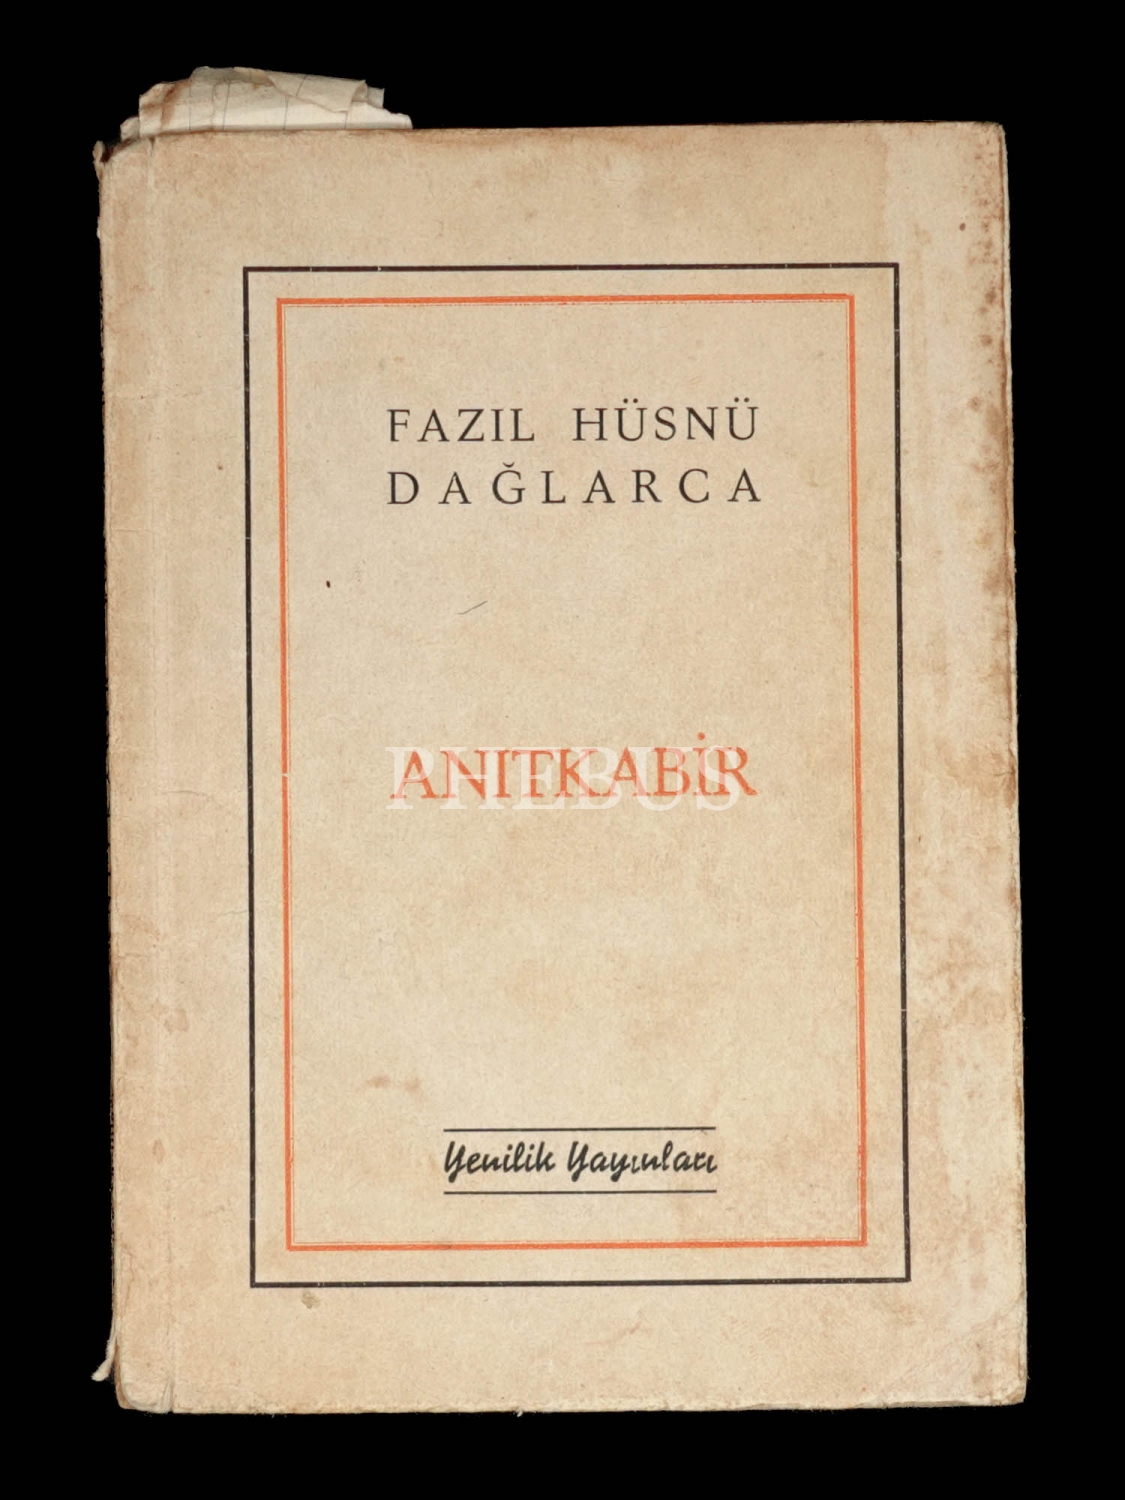 ANITKABİR, Fazıl Hüsnü Dağlarca, 1953, Yenilik Yayınları, 63 sayfa, 12x17 cm...